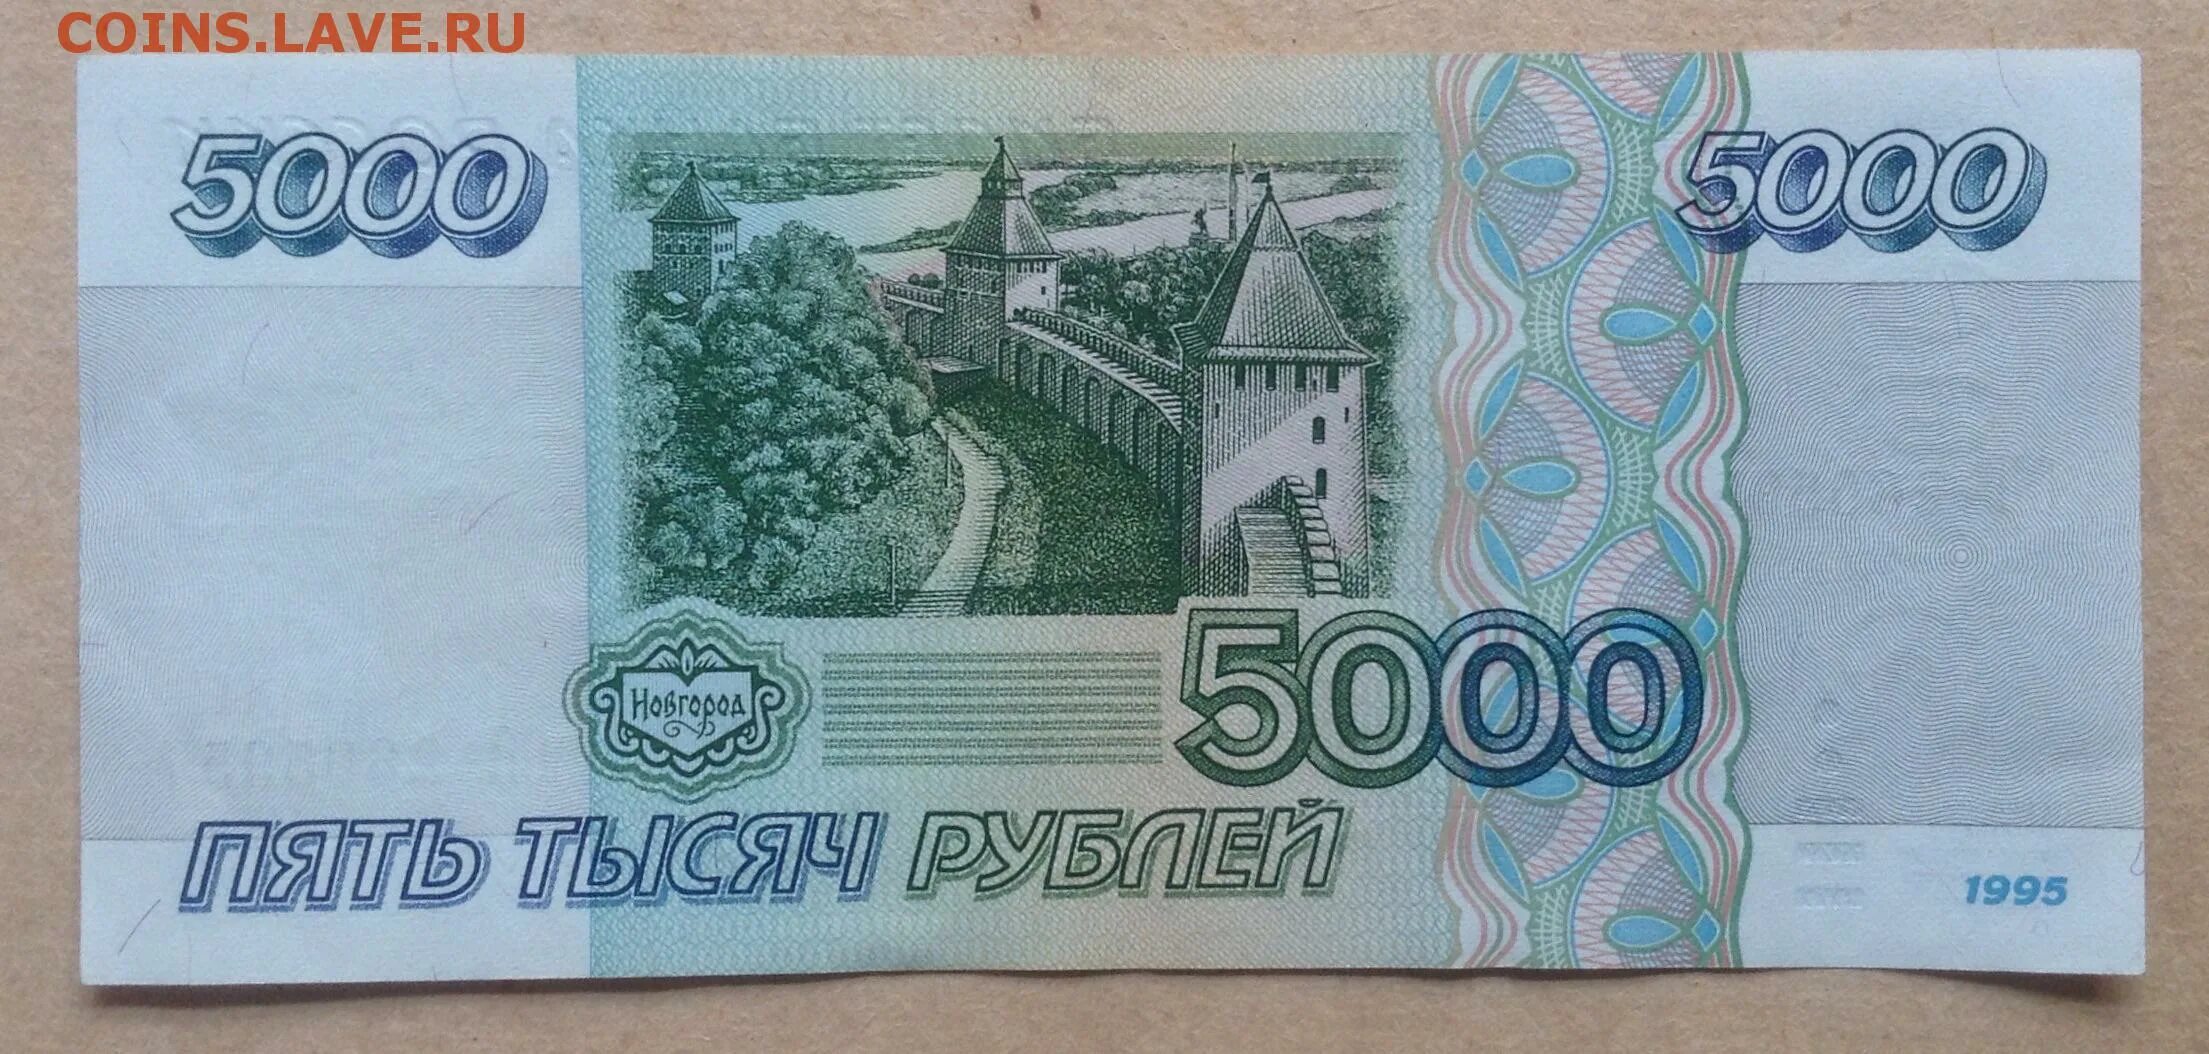 1995 Ел. 5000 рублей 1995